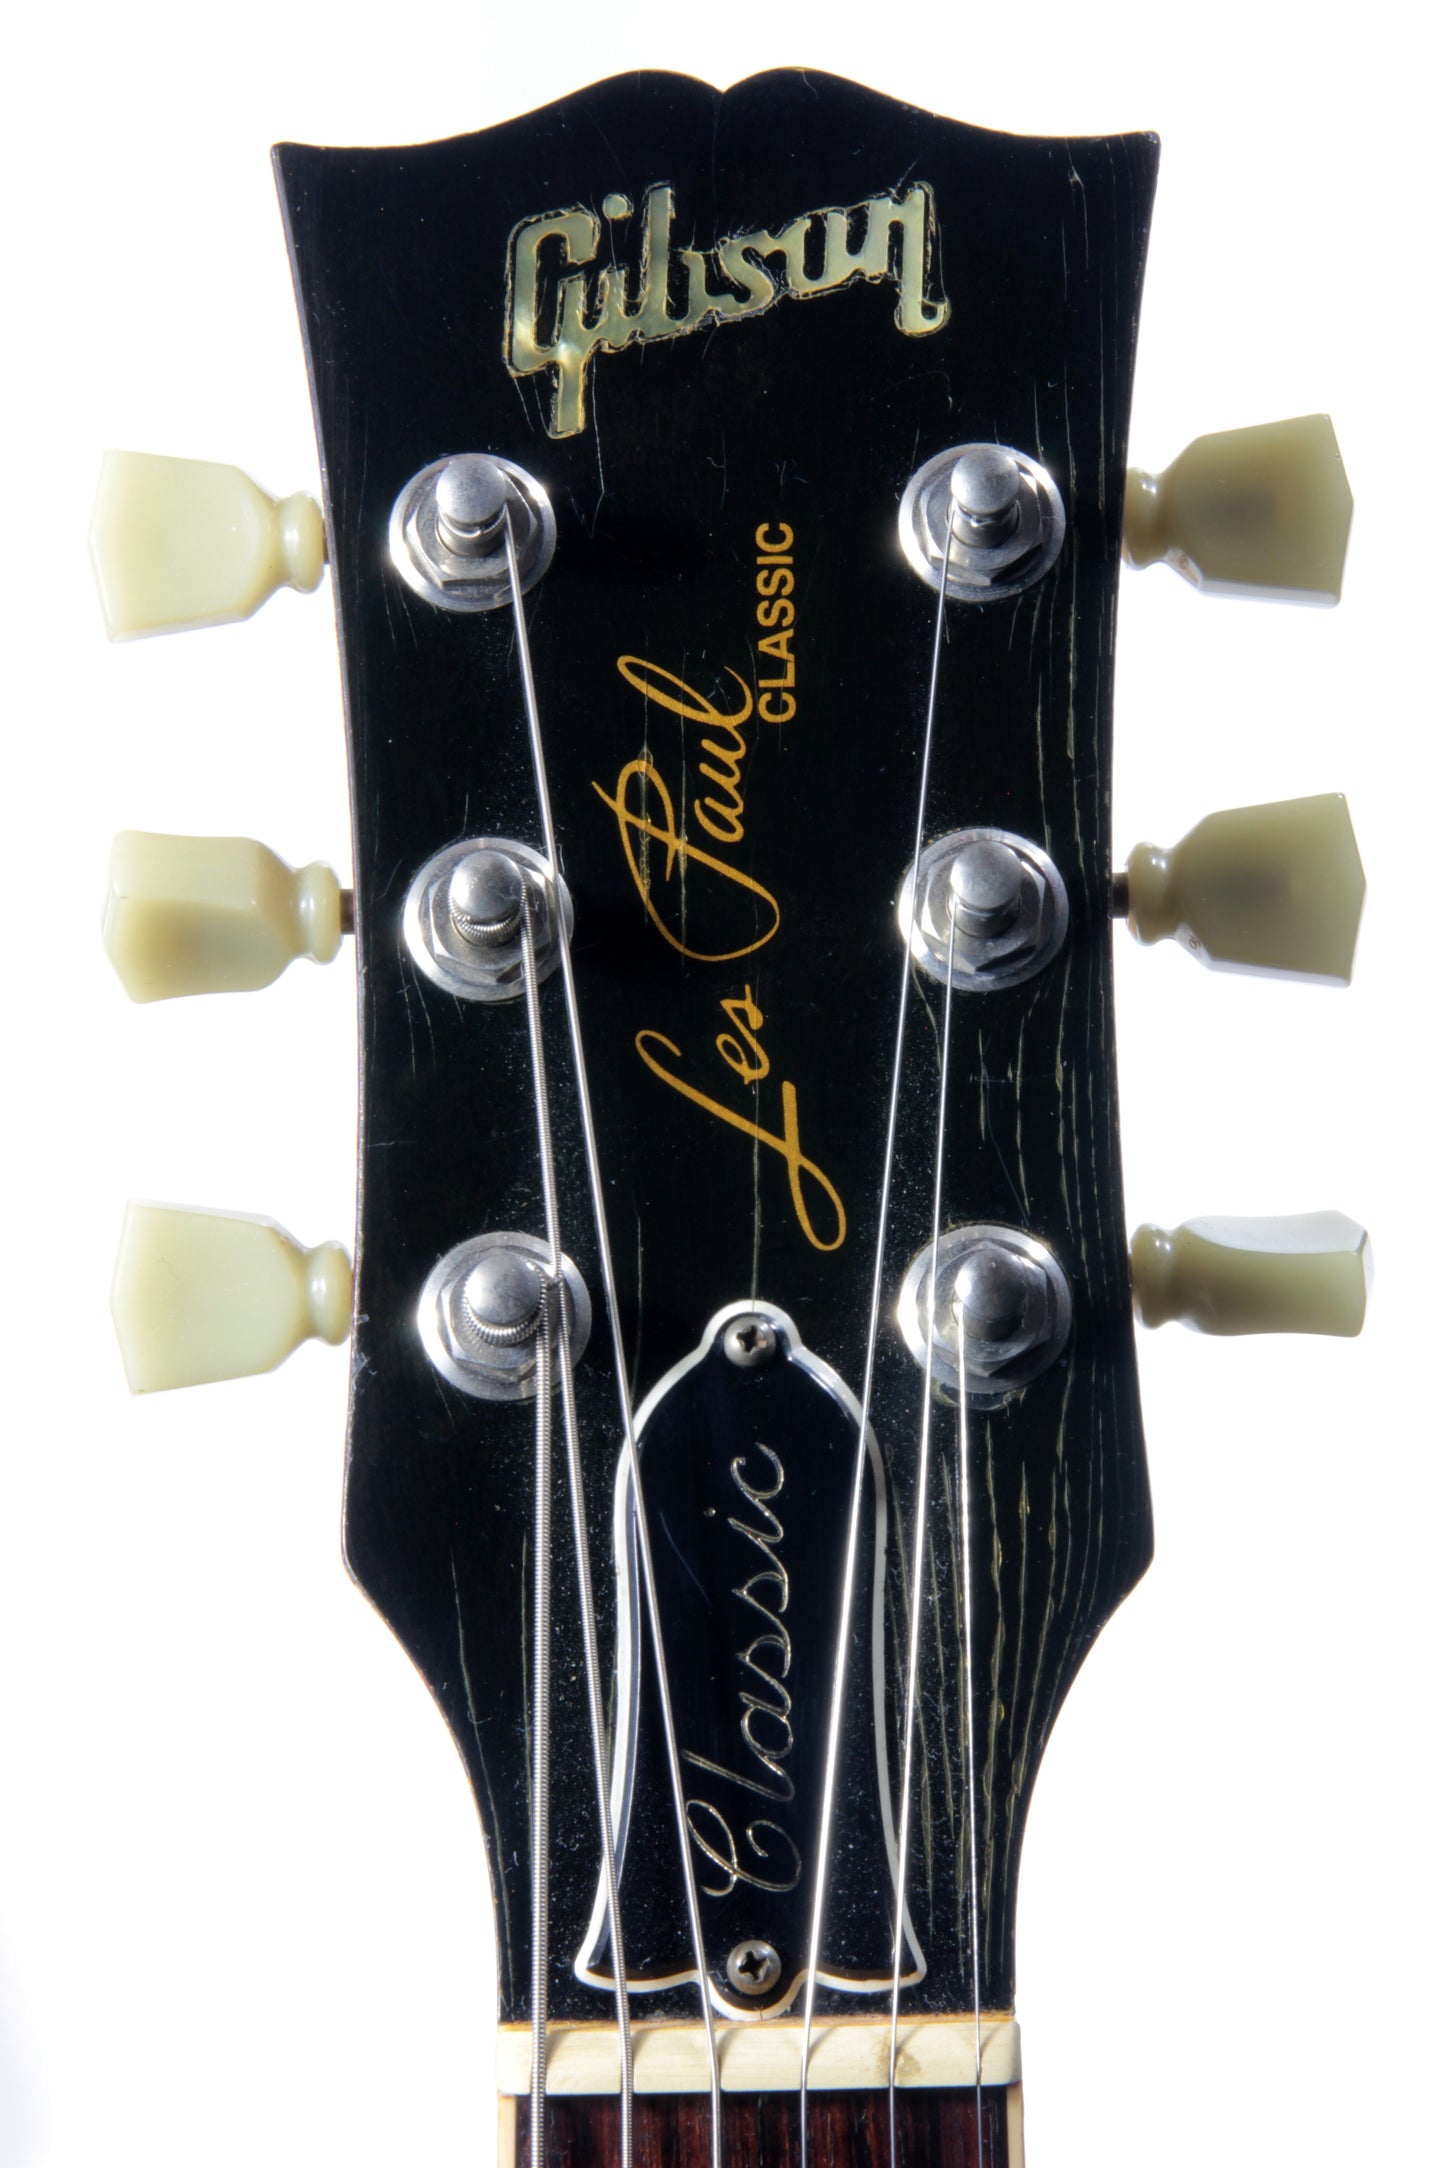 1994 Gibson Les Paul CLASSIC PLUS Cherry Sunburst FLAMETOP! 1990's standard